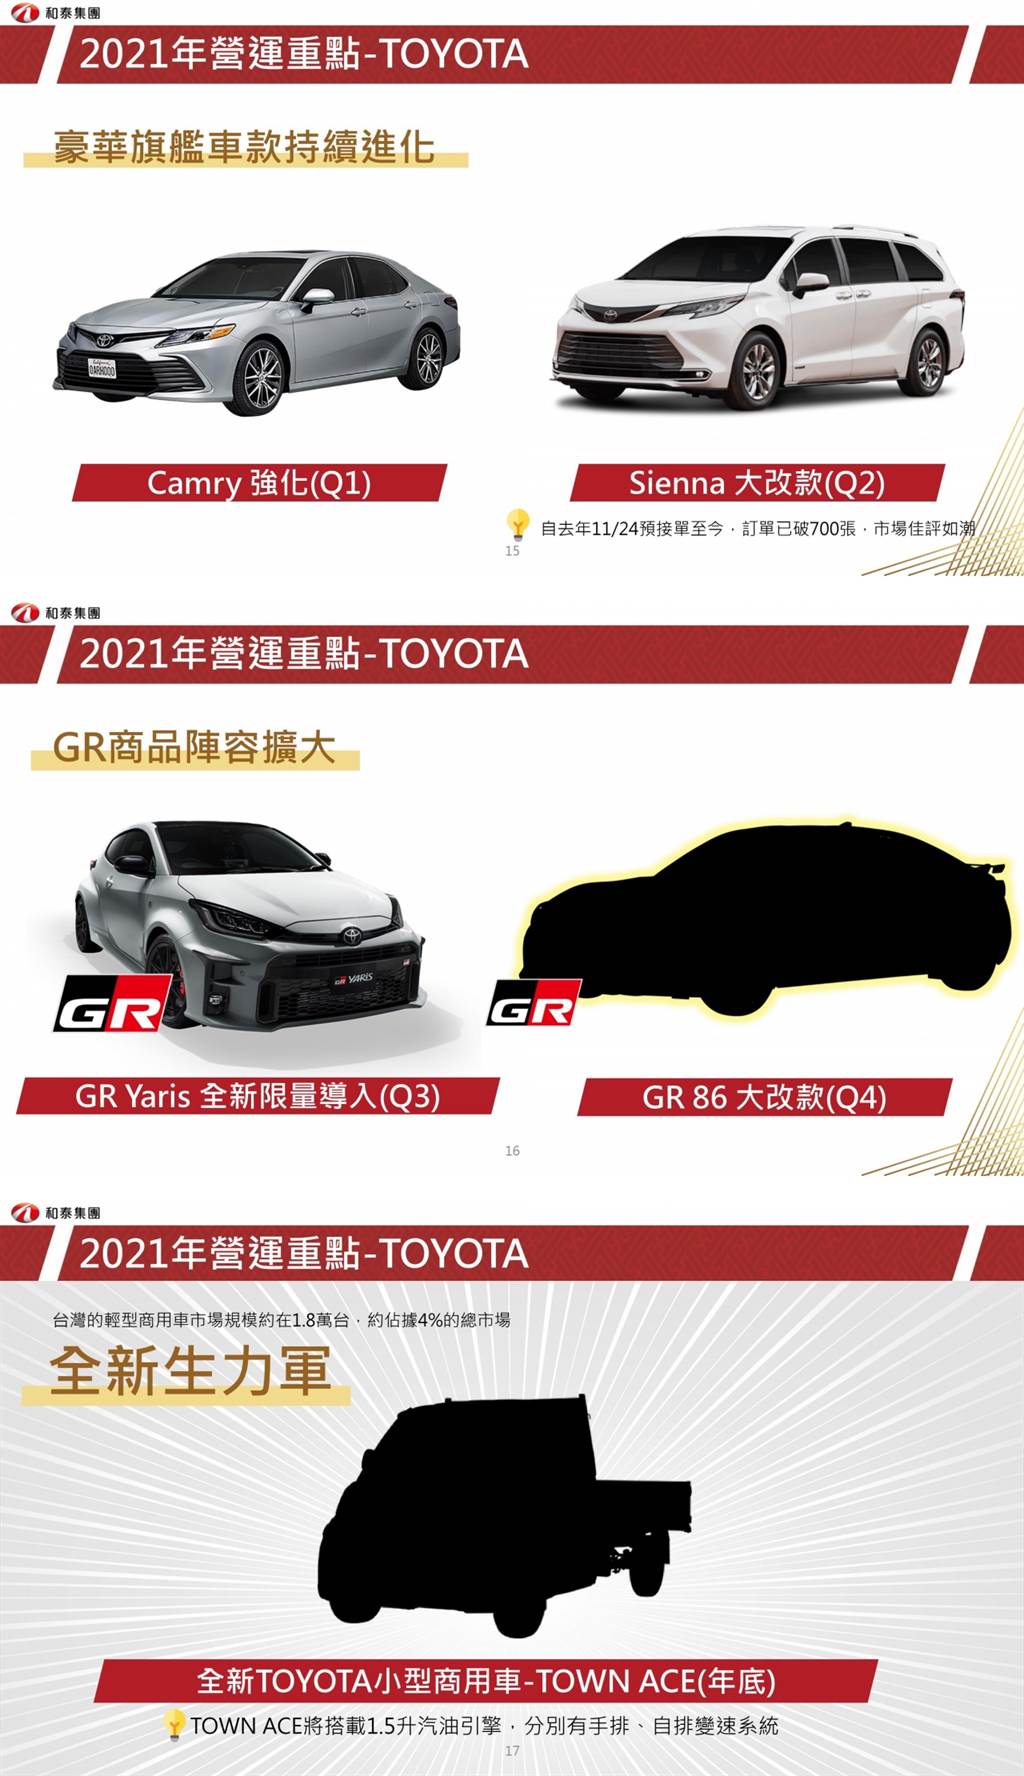 和泰汽車 2021 新年展望計畫，Toyota GR Yaris/GR 86/Townace 三大強棒接連到來、Maas 將更進一步！
